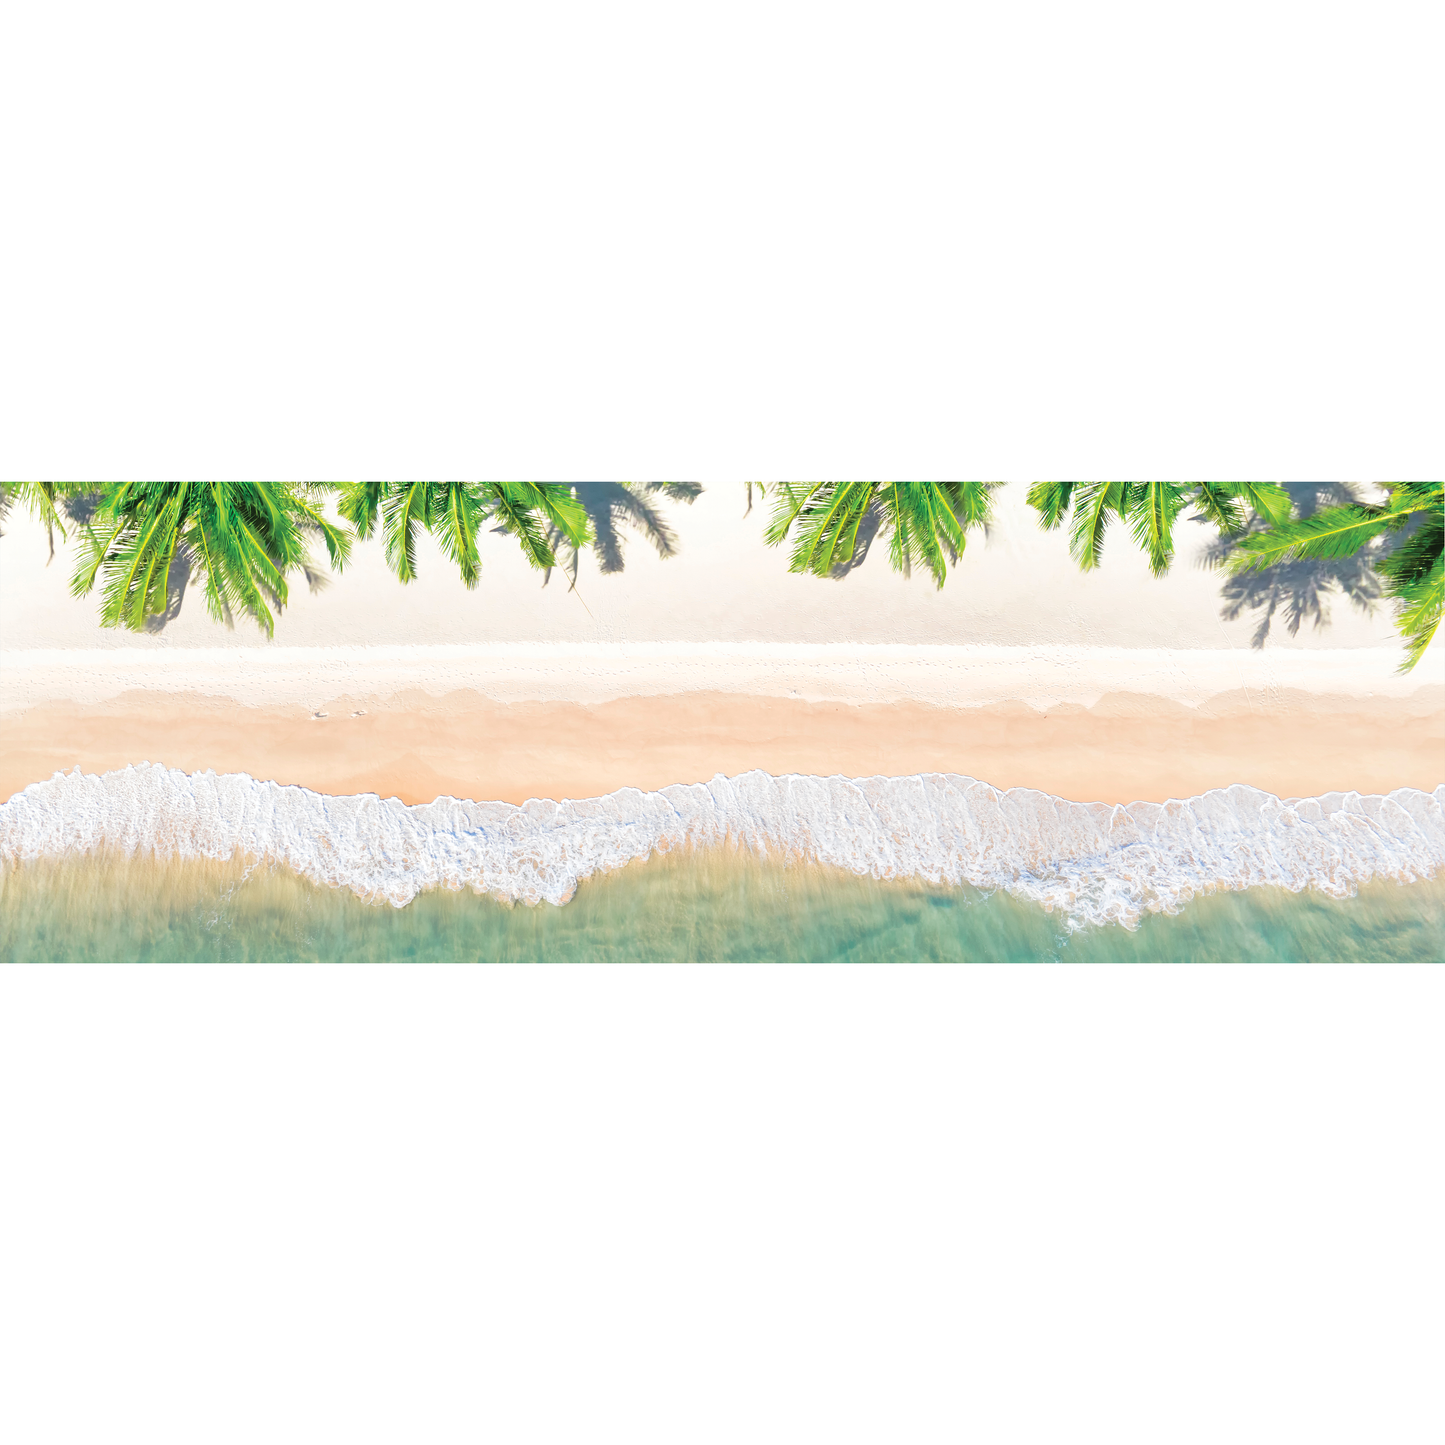 Beach & Palm Trees